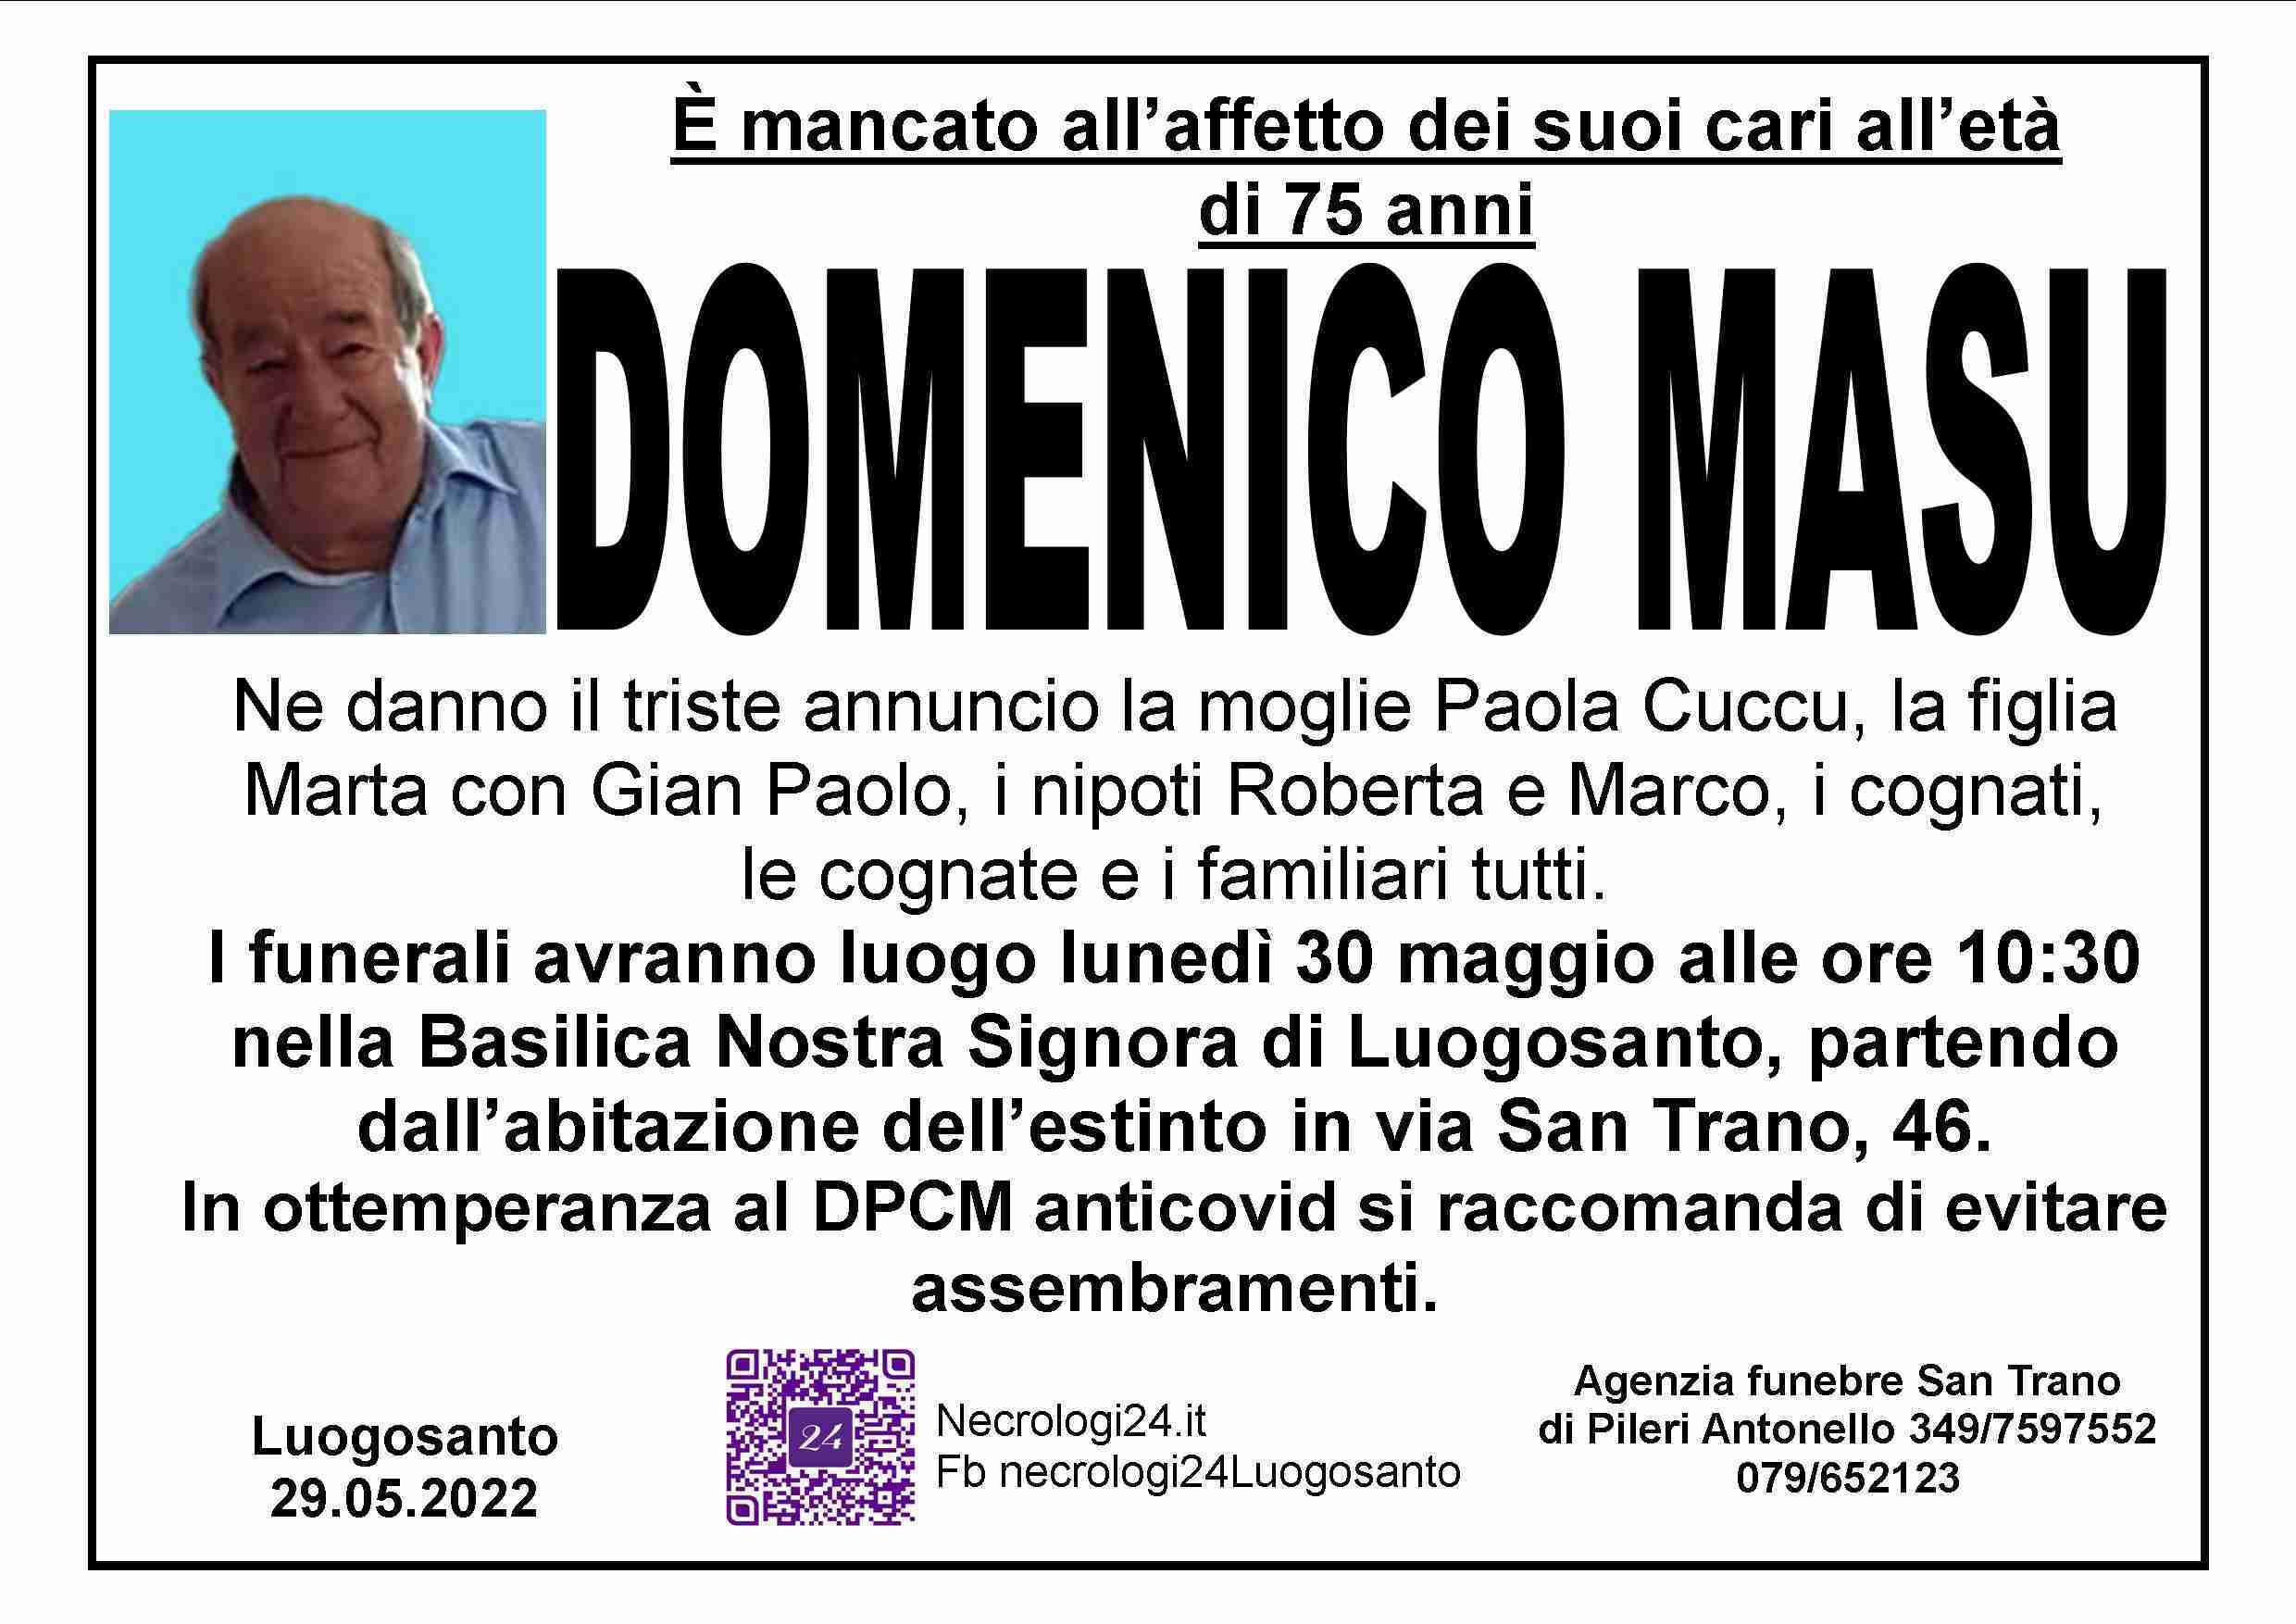 Domenico Masu